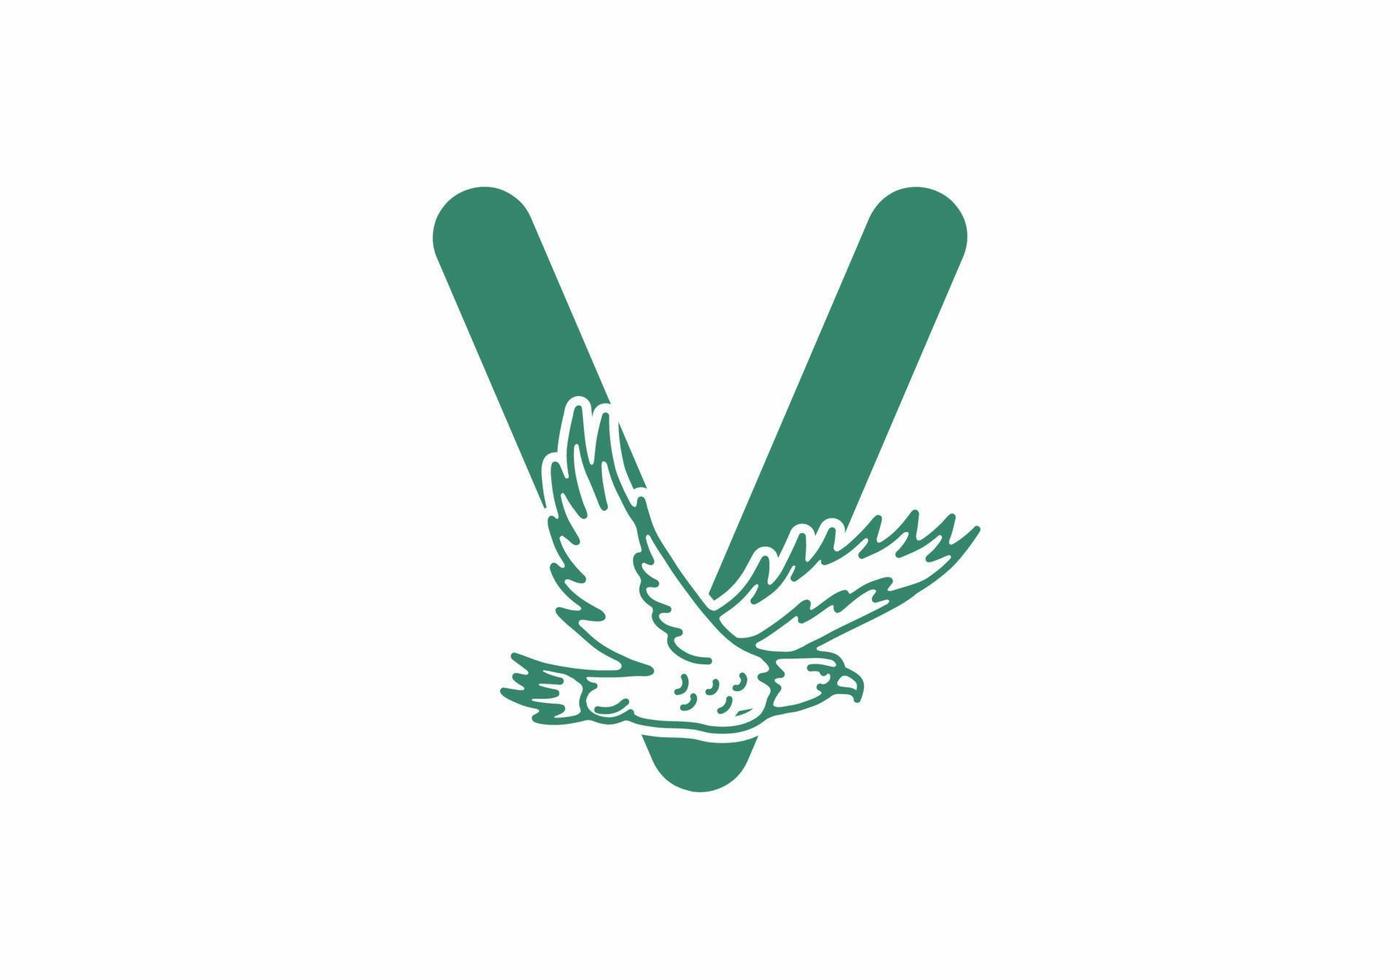 Line art illustration of flying eagle with V initial letter vector